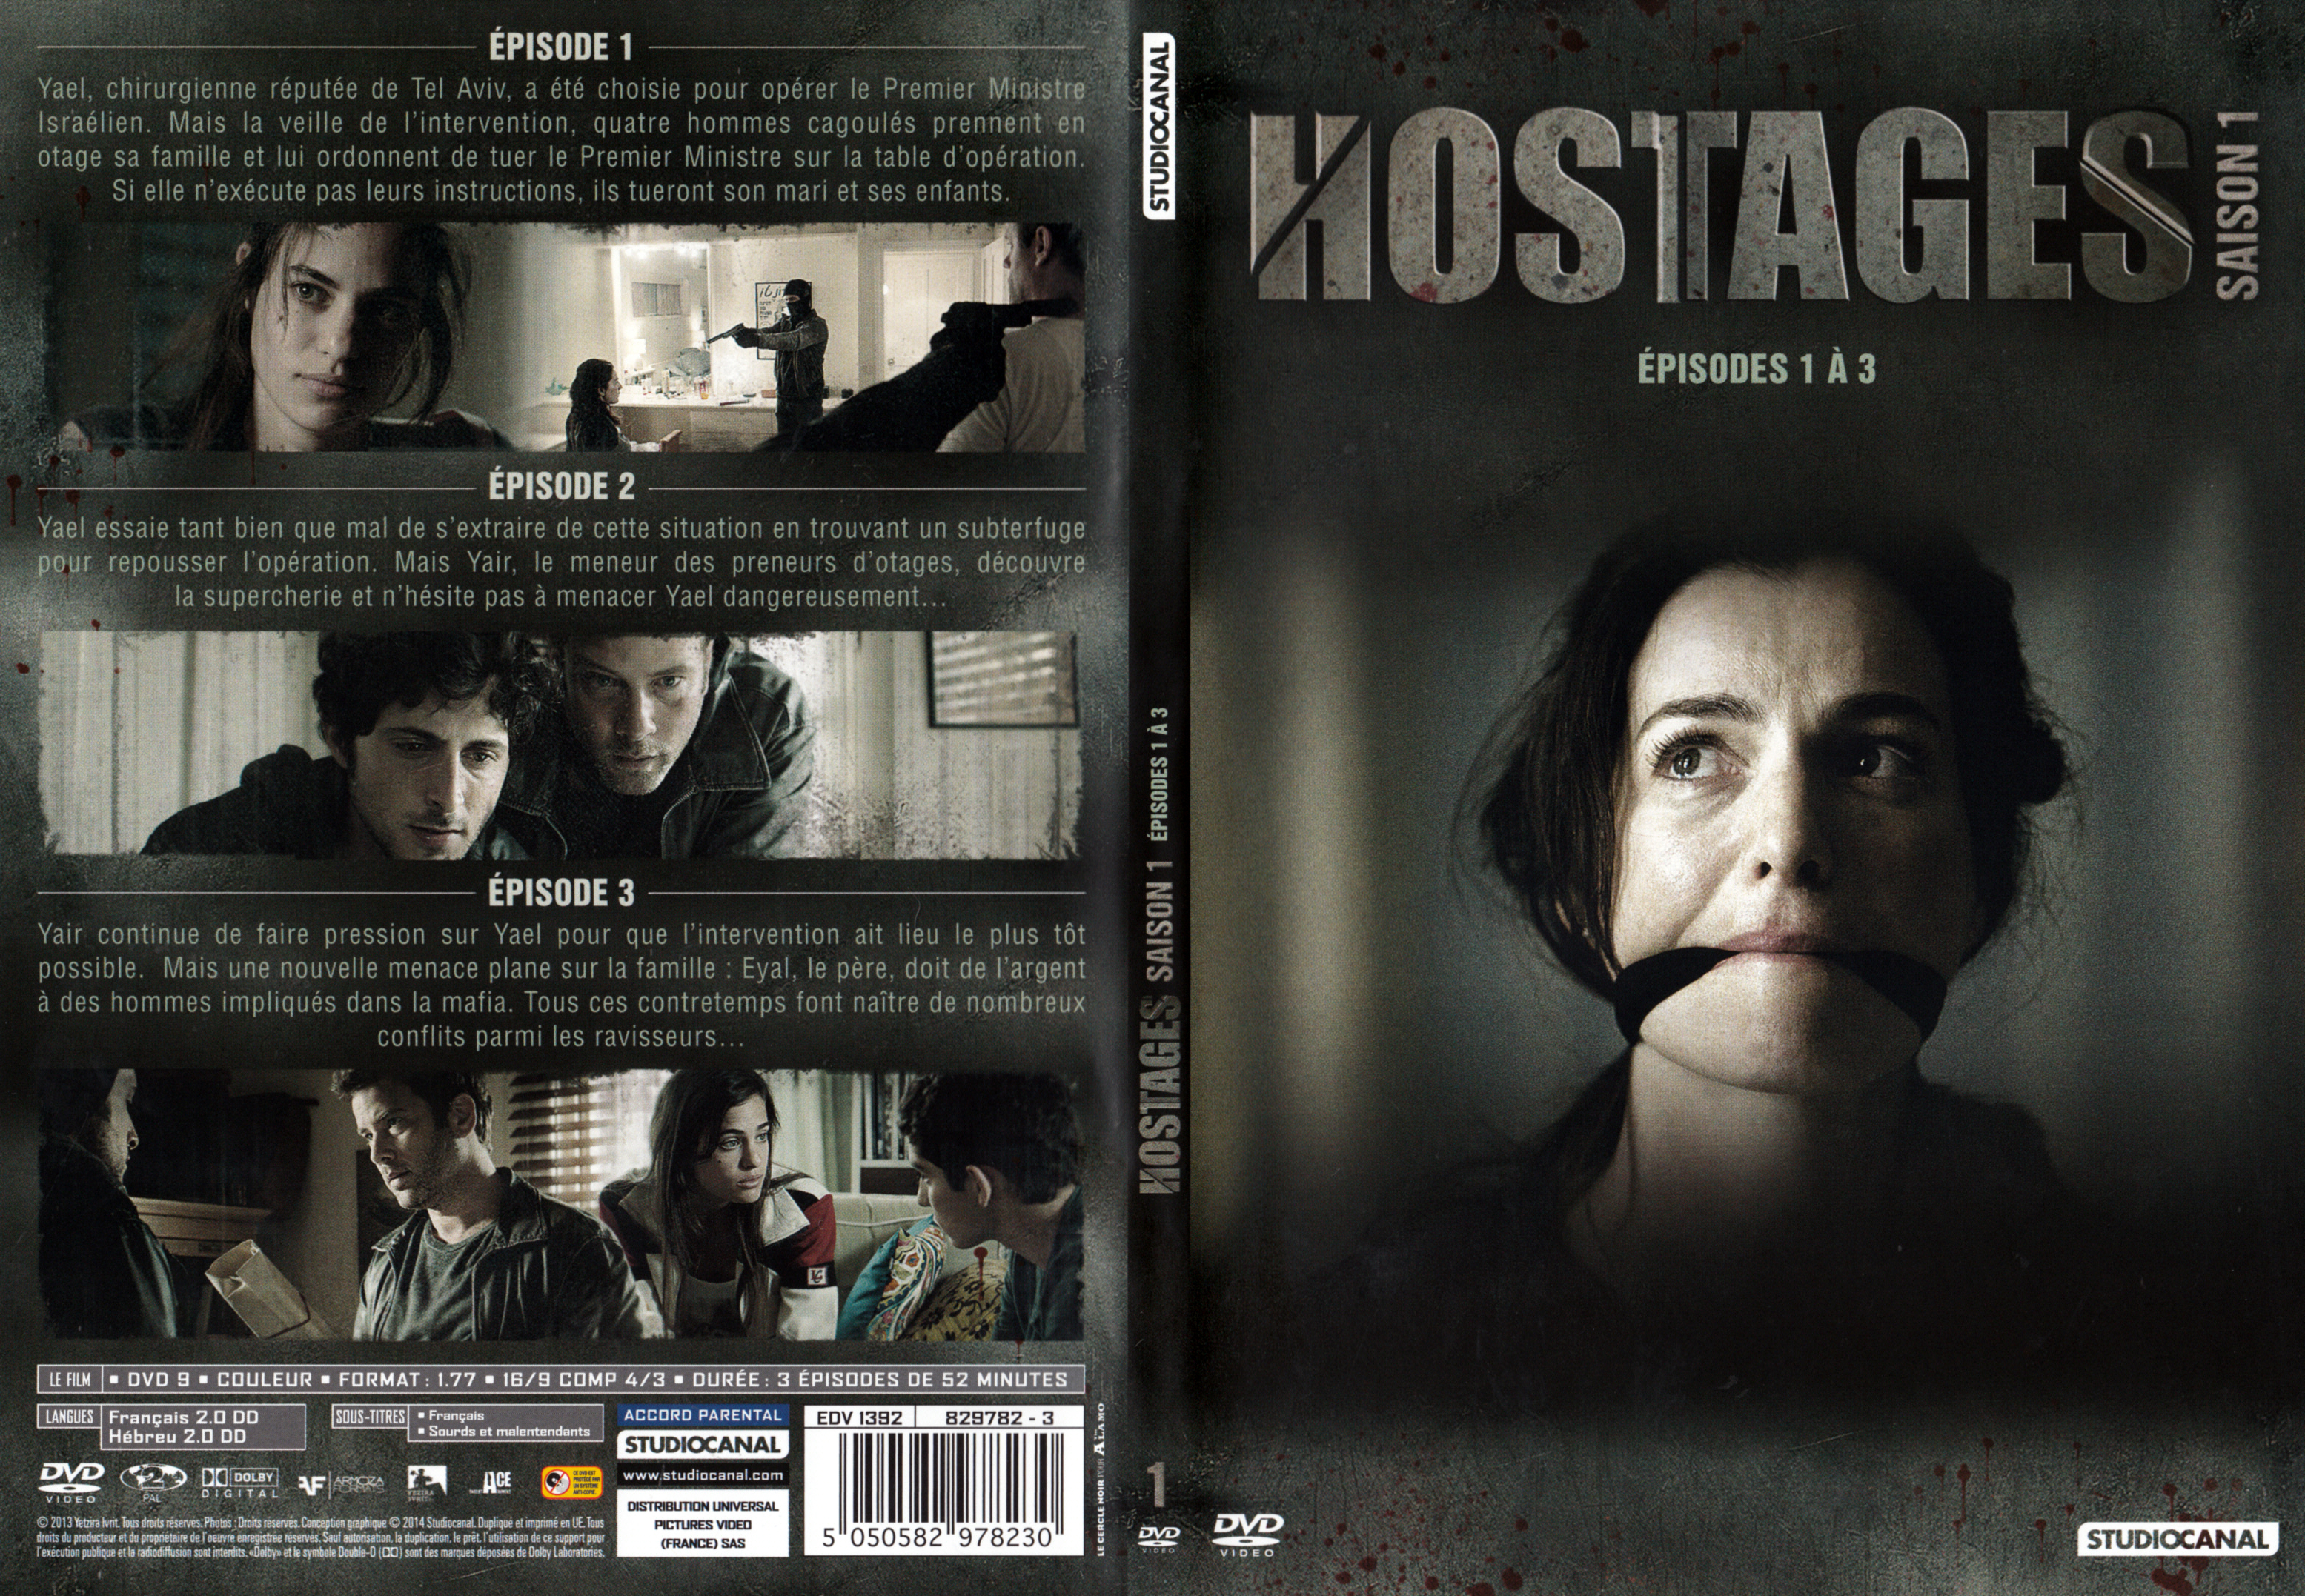 Jaquette DVD Hostages Saison 1 DVD 1